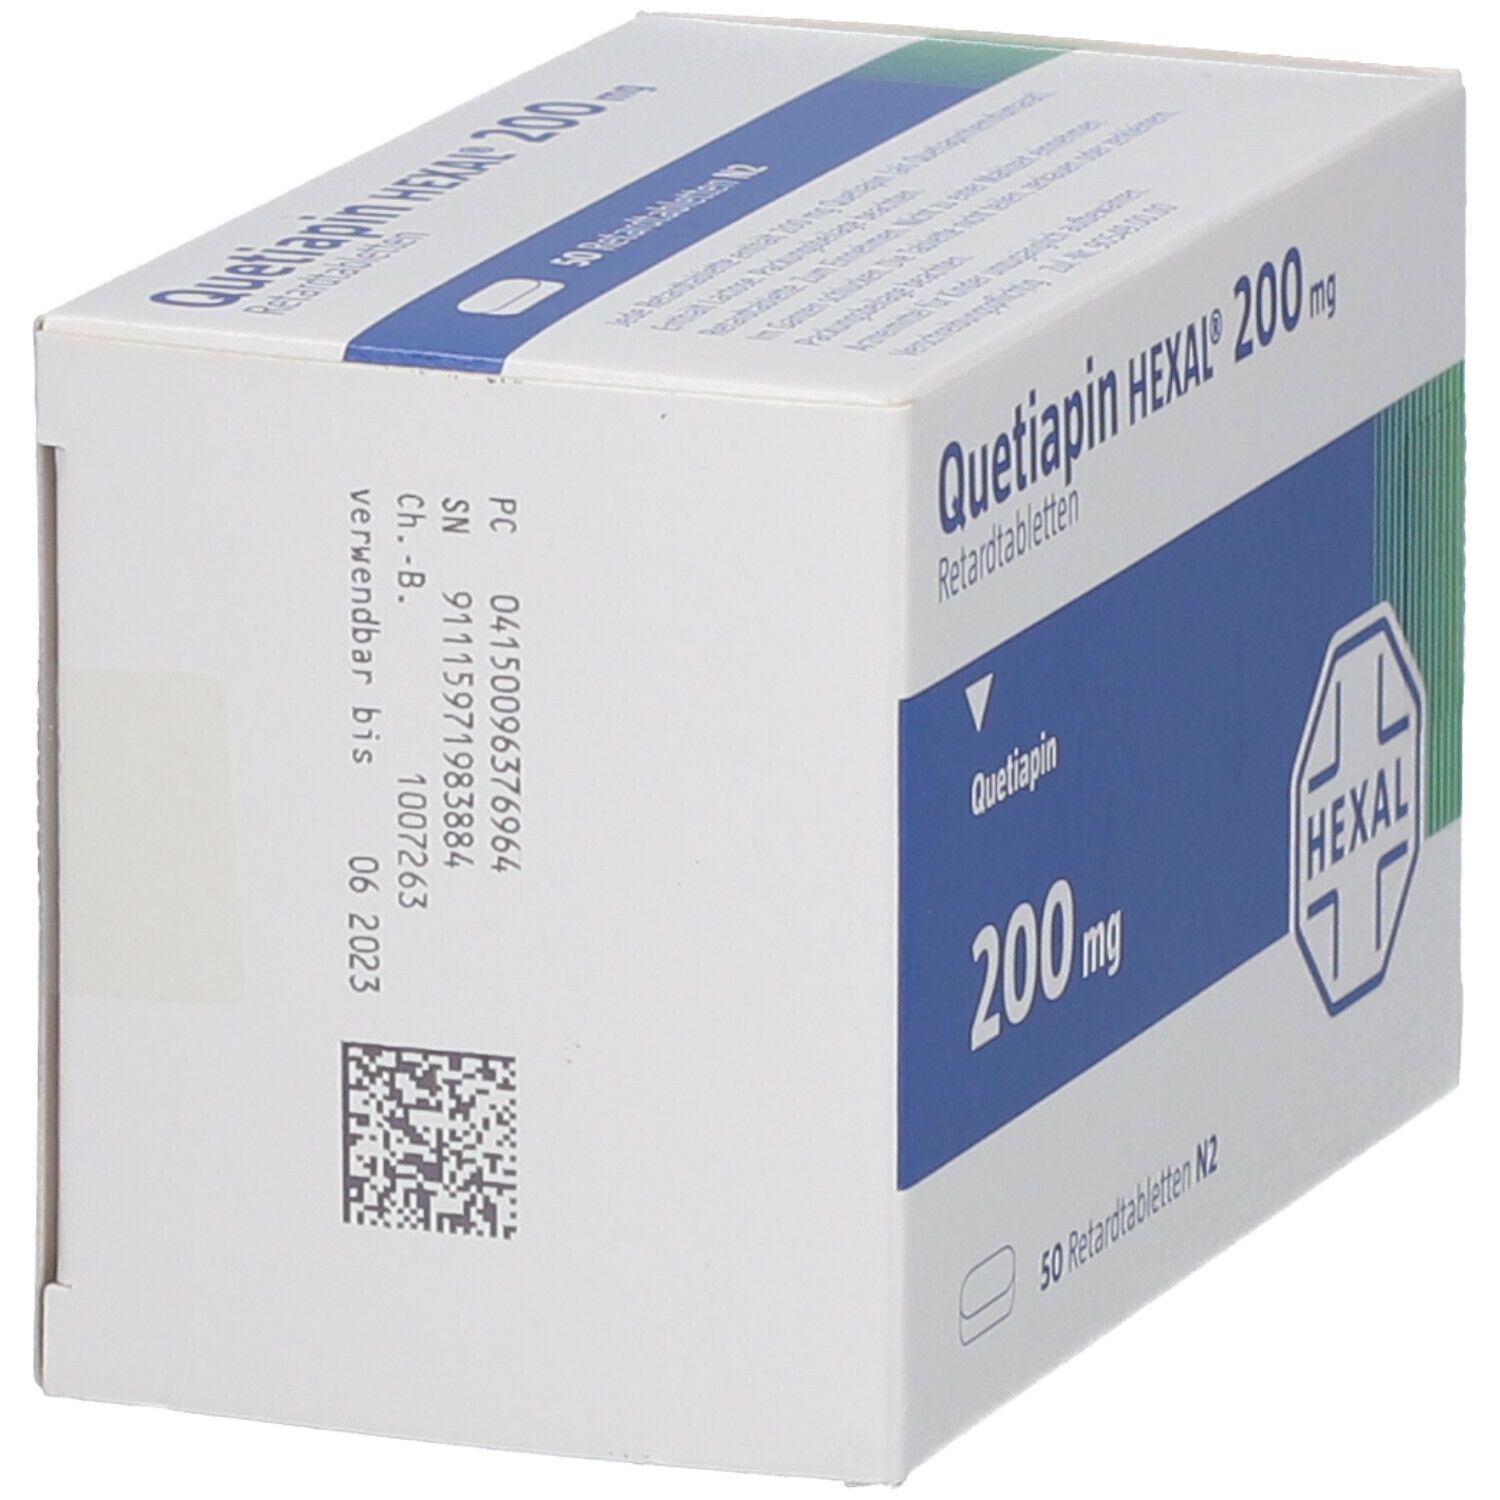 Quetiapin HEXAL® 200 mg